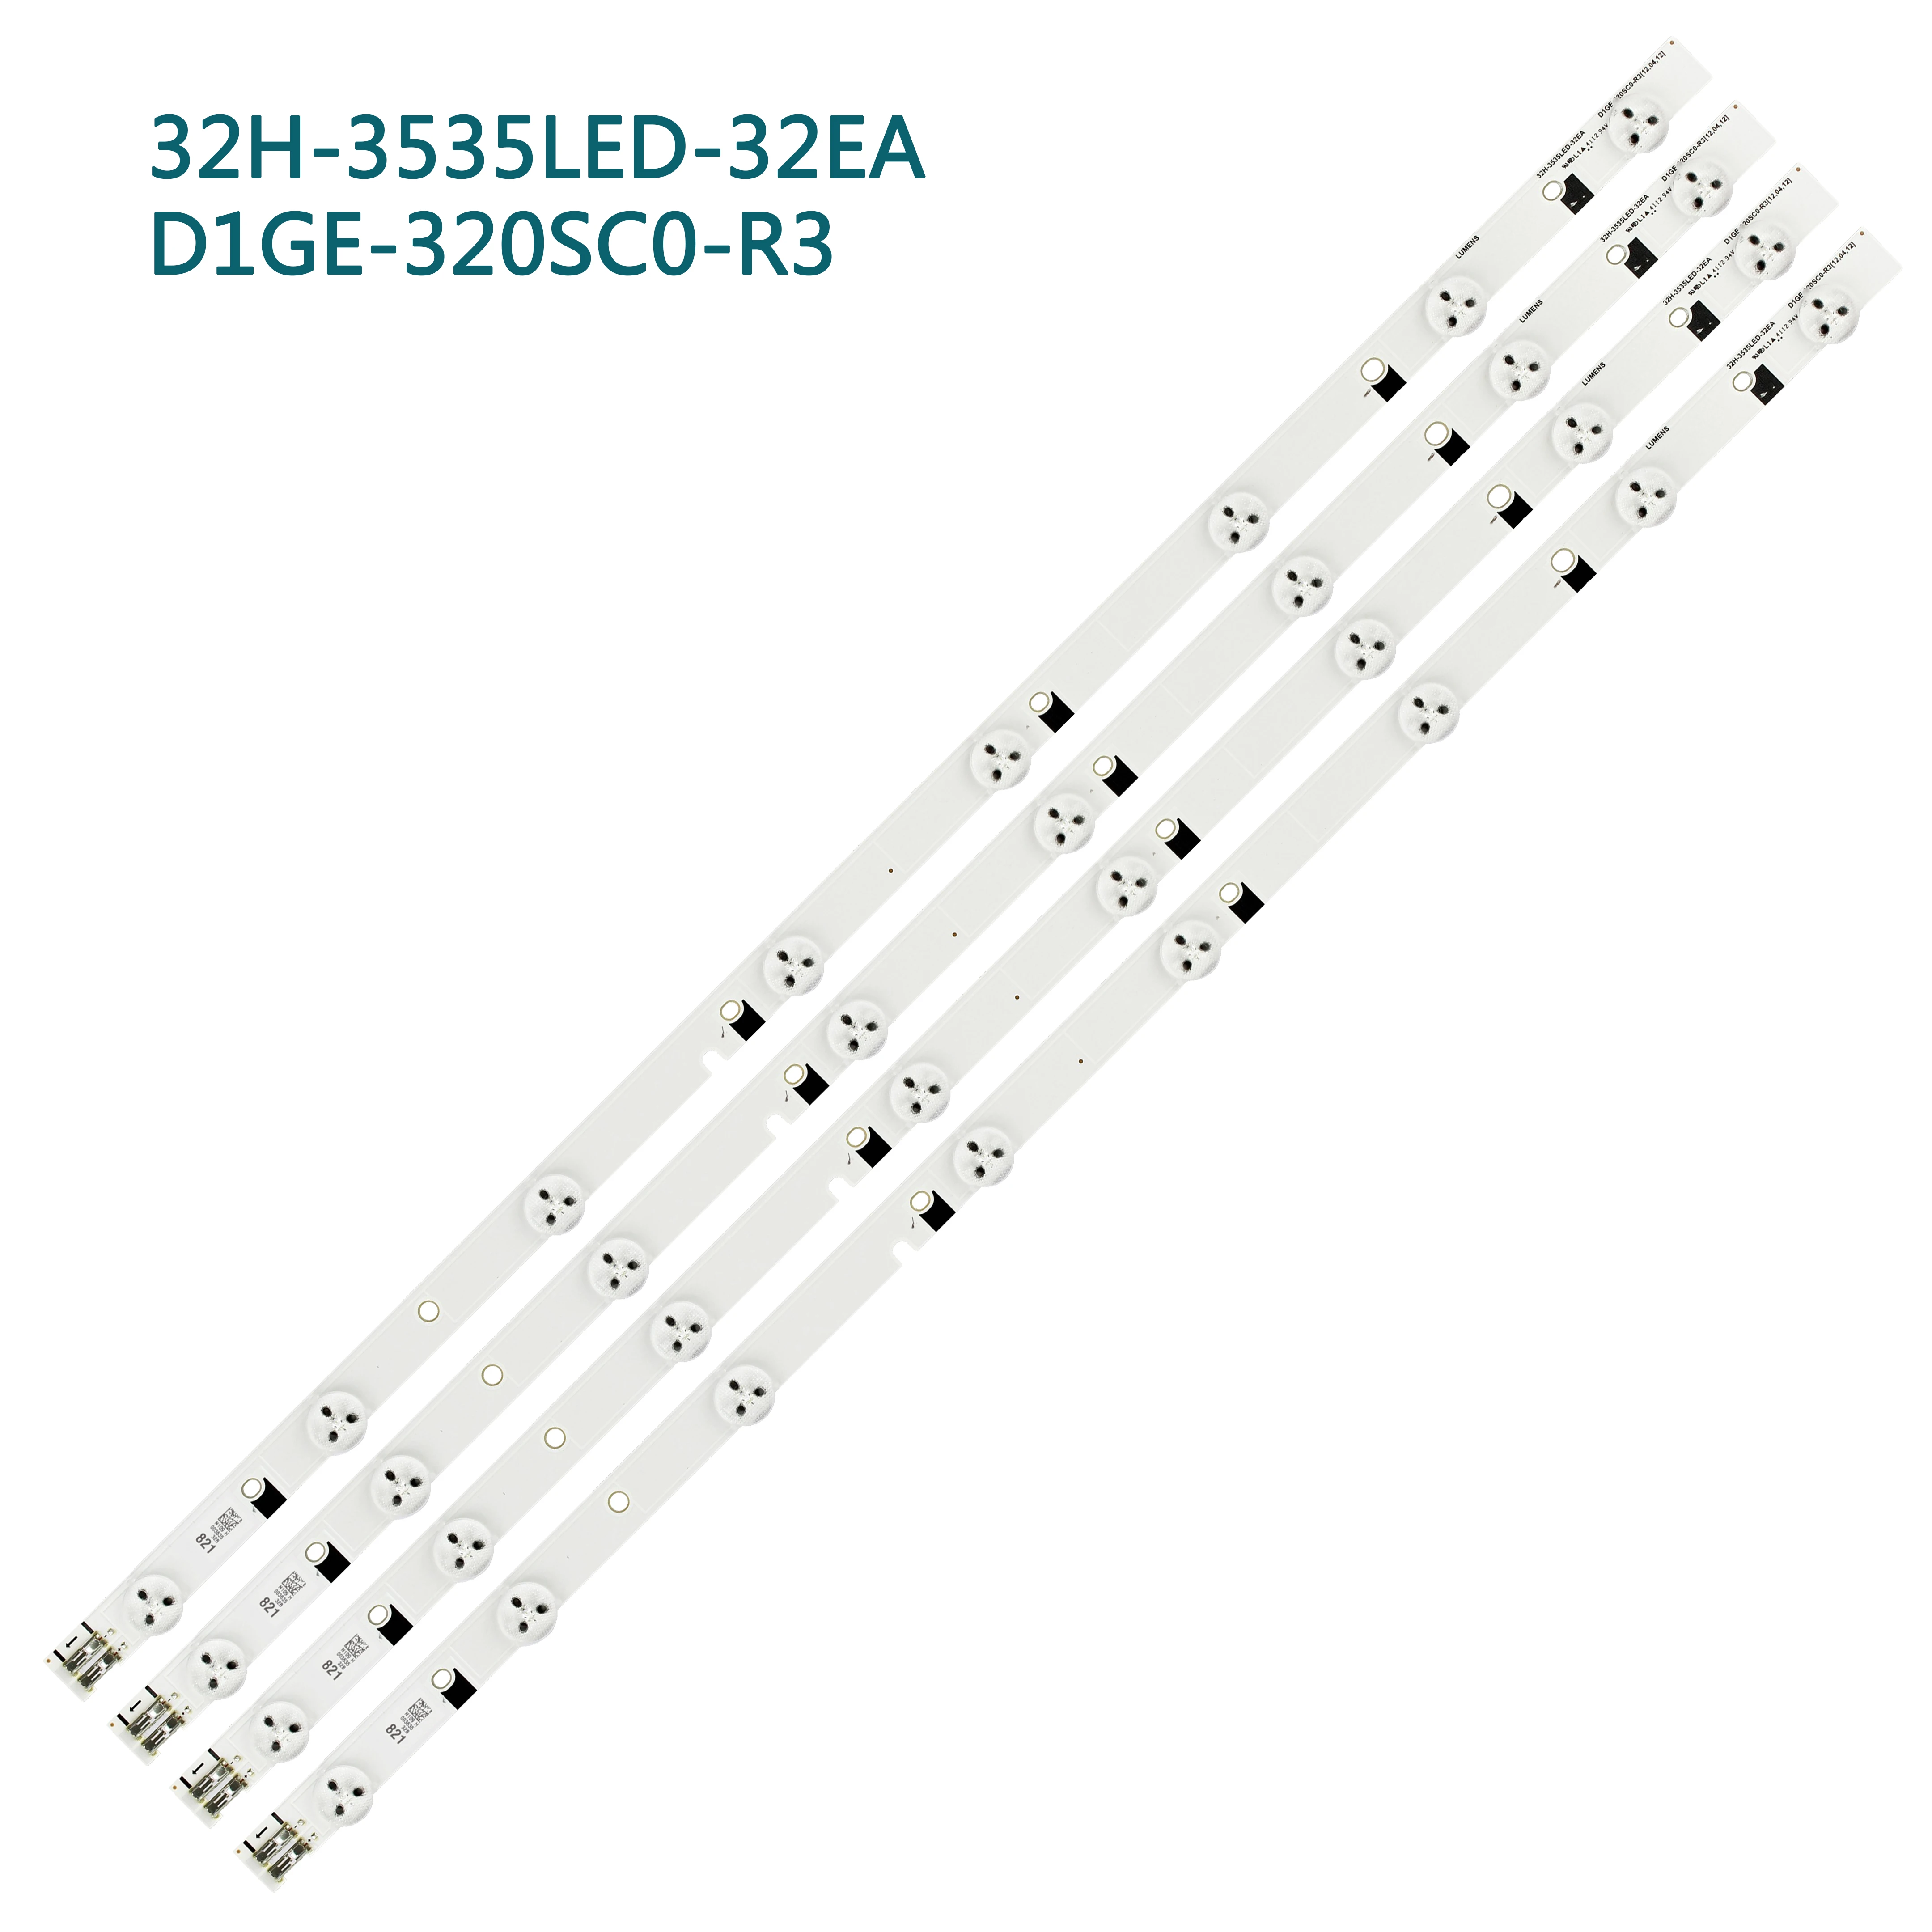 Комплект) 4 шт. 8 светодиодный s 580 мм светодиодный подсветка stirp для UE32EH4000W D1GE-320SC0-R3 BN96-24145A 32H-3535 светодиодный-32EA D1GE-320SC0-R2